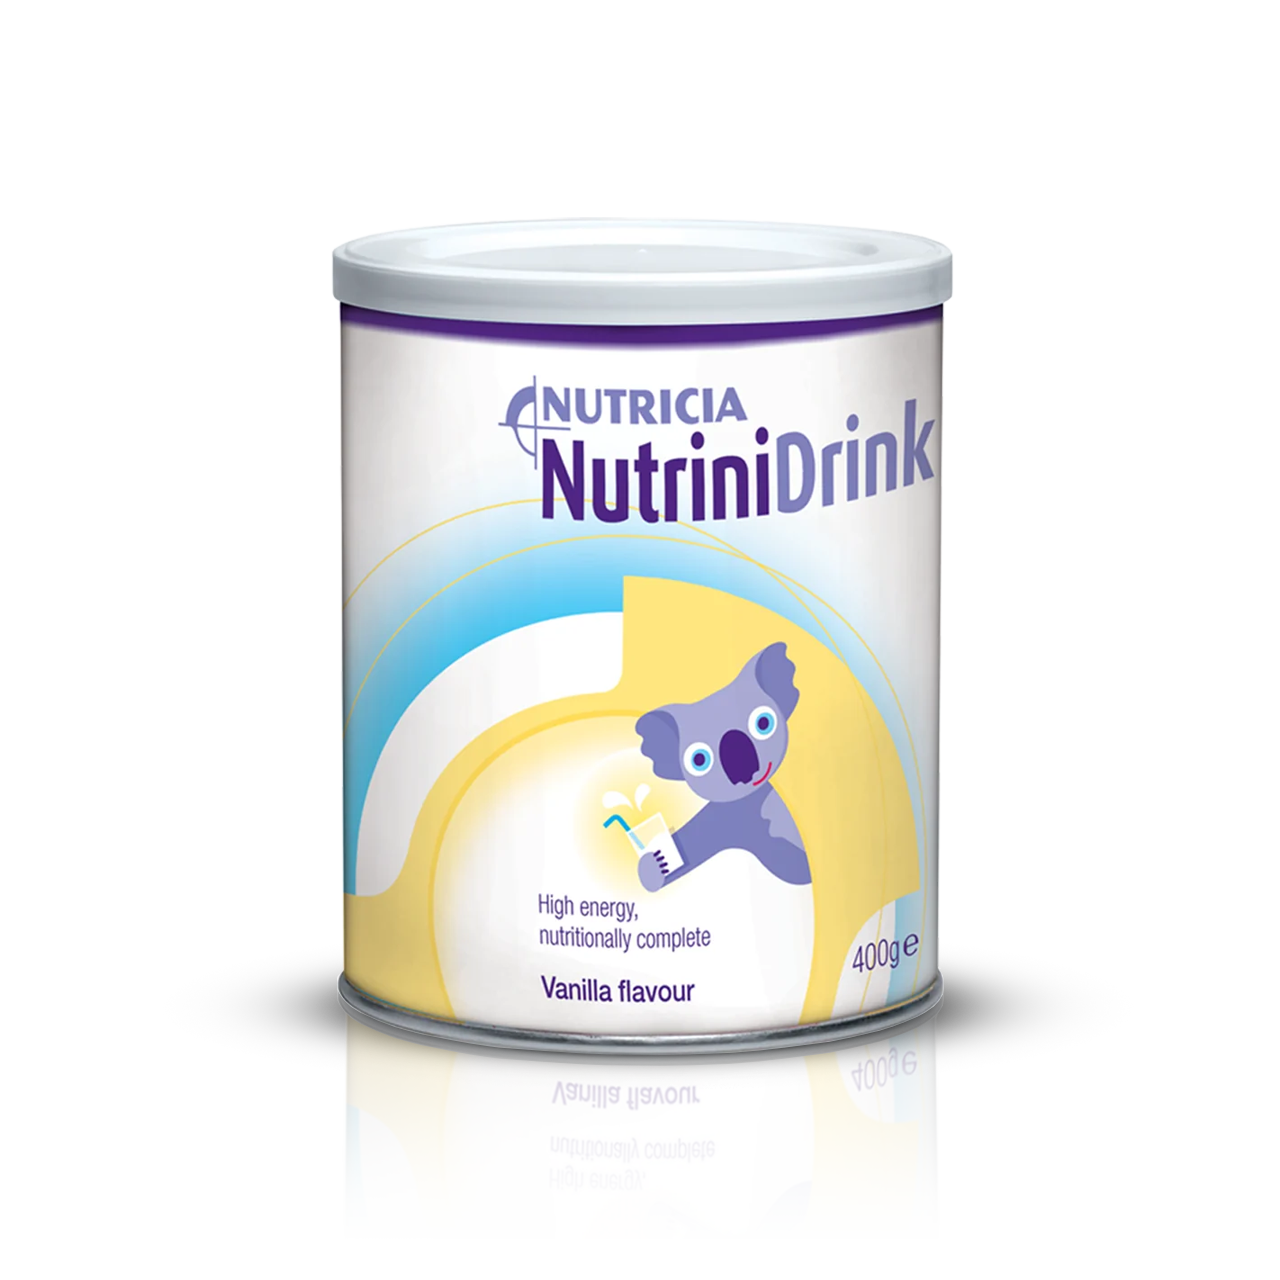 Nutricia NutriniDrink Powder